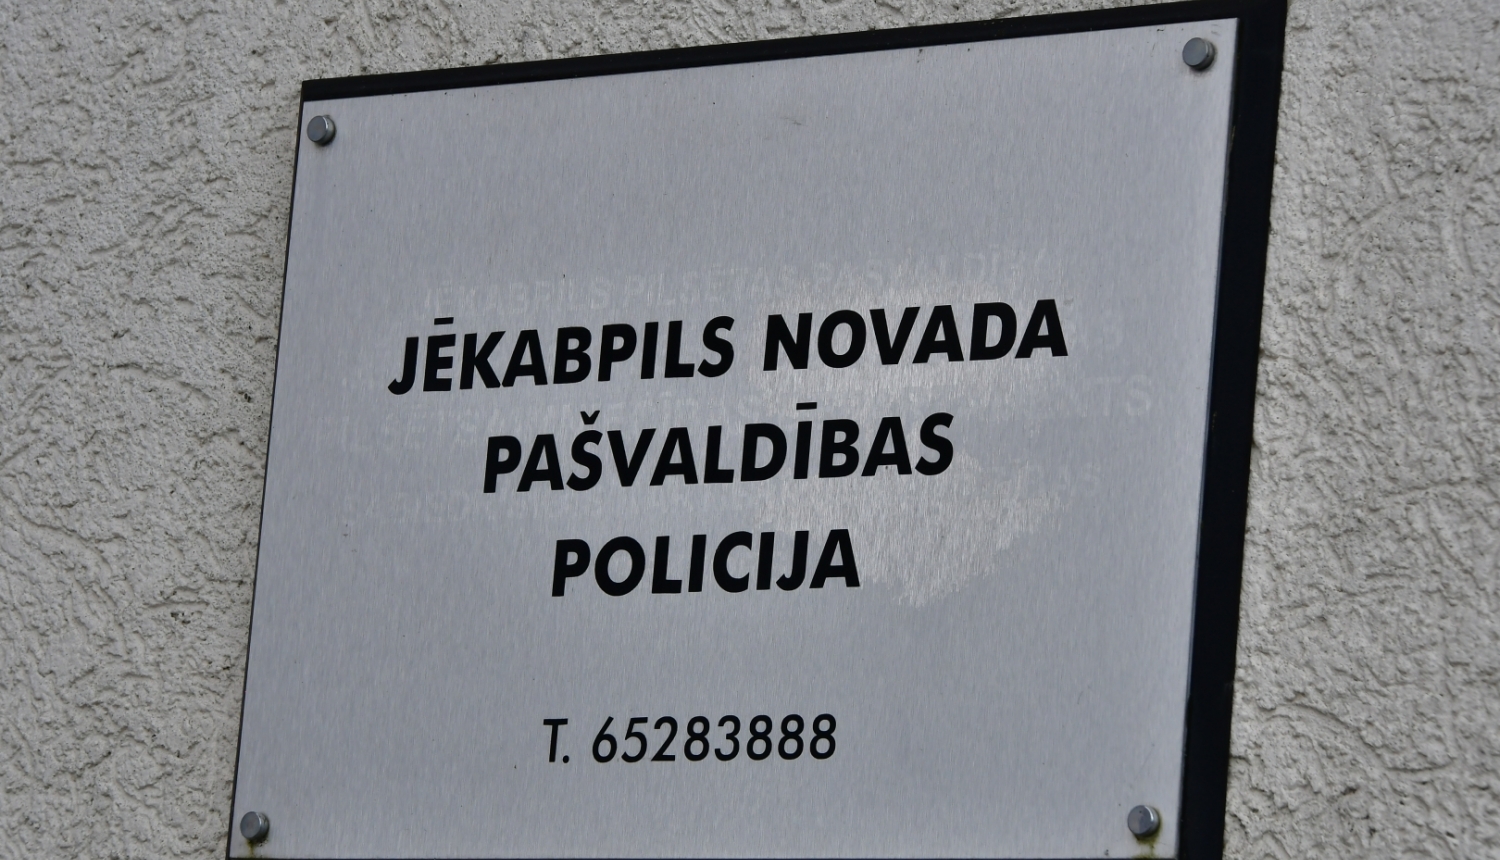 Plāksnīte ar uzrakstu Jēkabpils novada Pašvaldības policija